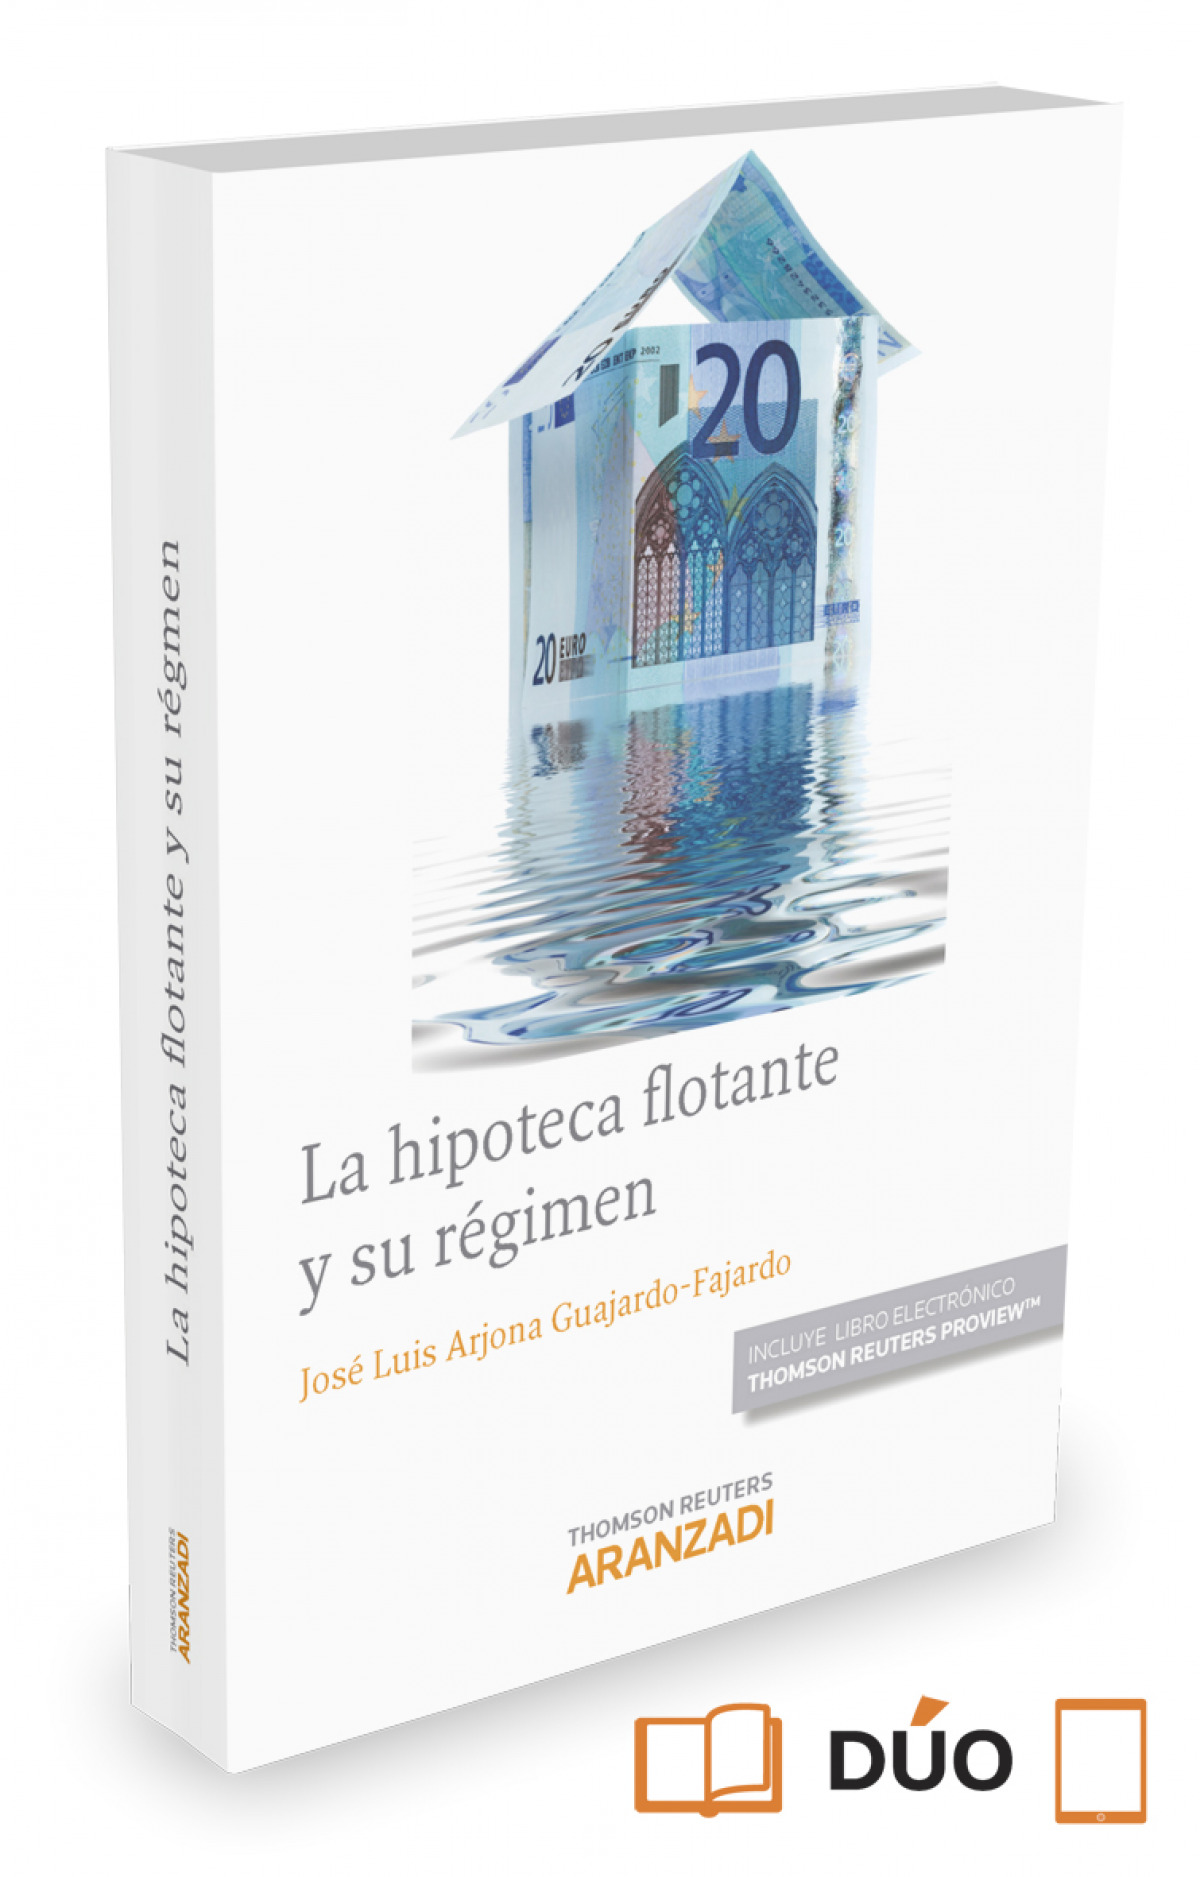 La hipoteca flotante y su régimen (Papel e-book) - Arjona Guajardo-Fajardo, José Luis